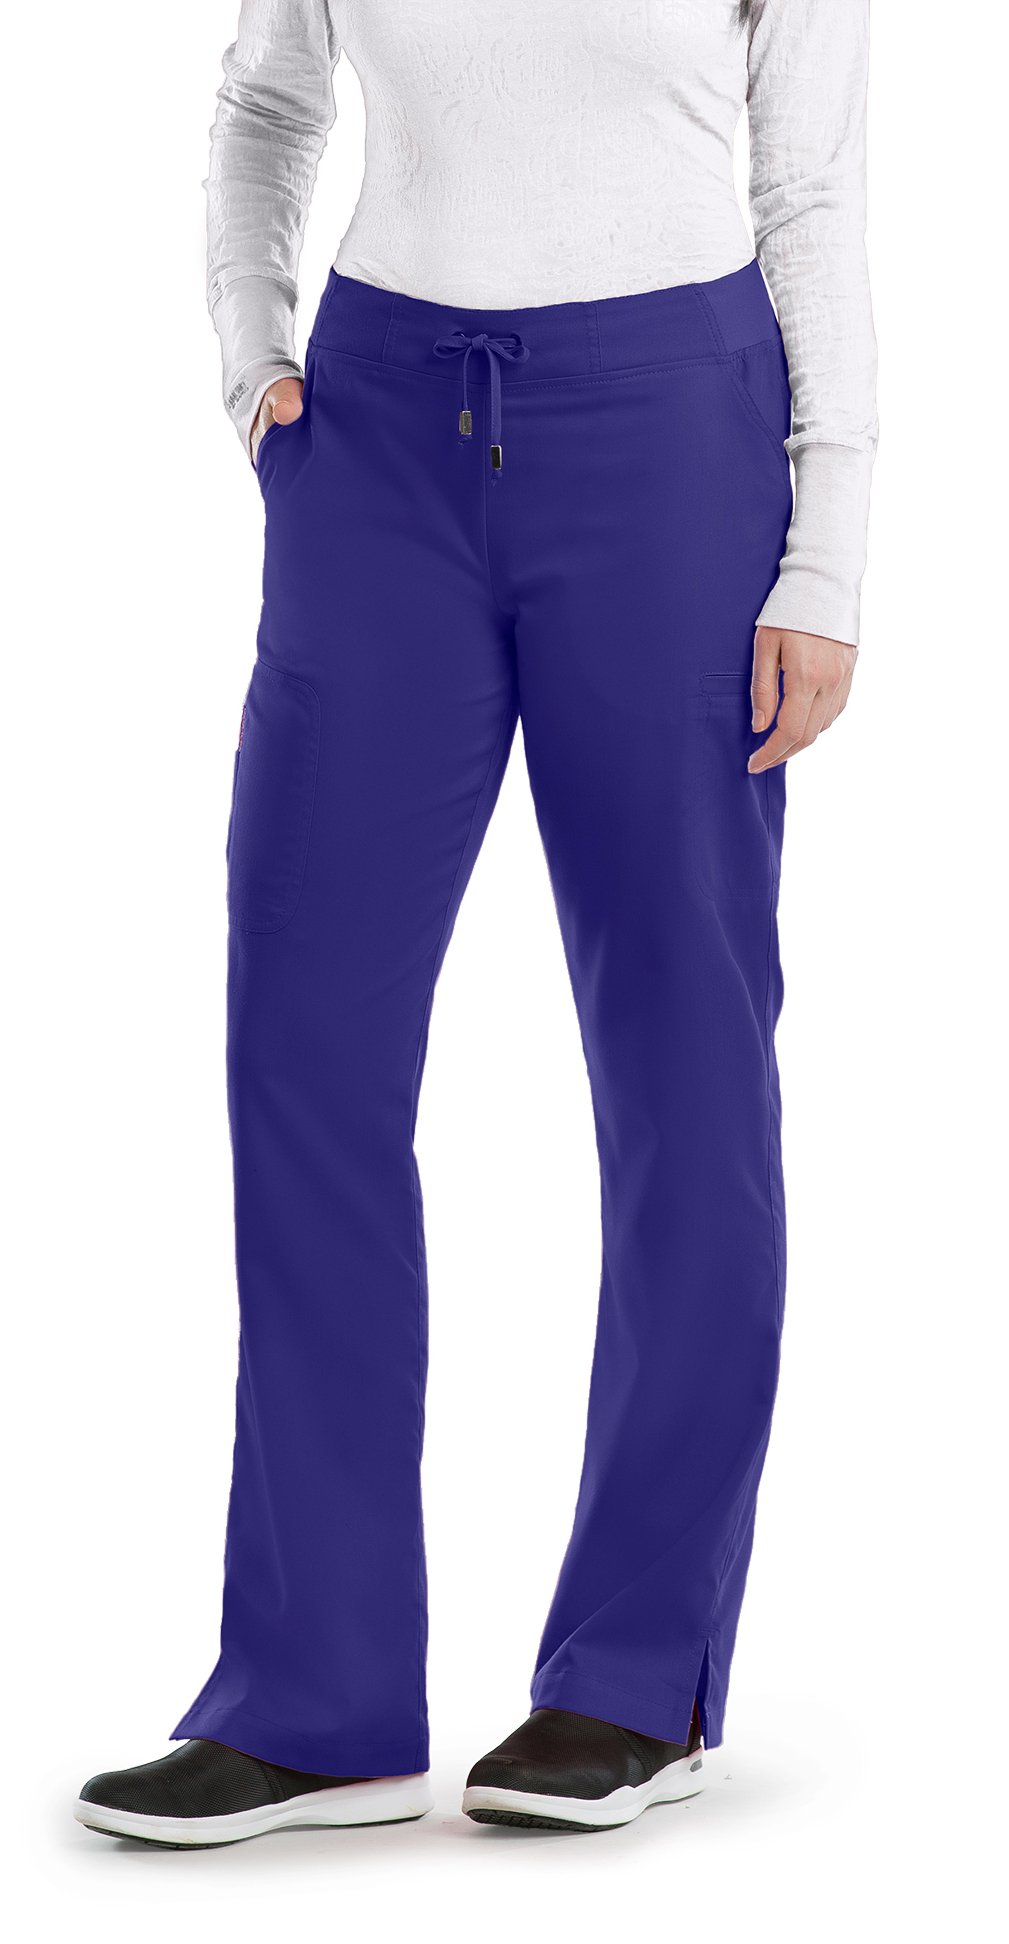 Grey's Anatomy Women's Destination 6 Pocket Scrub Pant - Work World - Workwear, Work Boots, Safety Gear